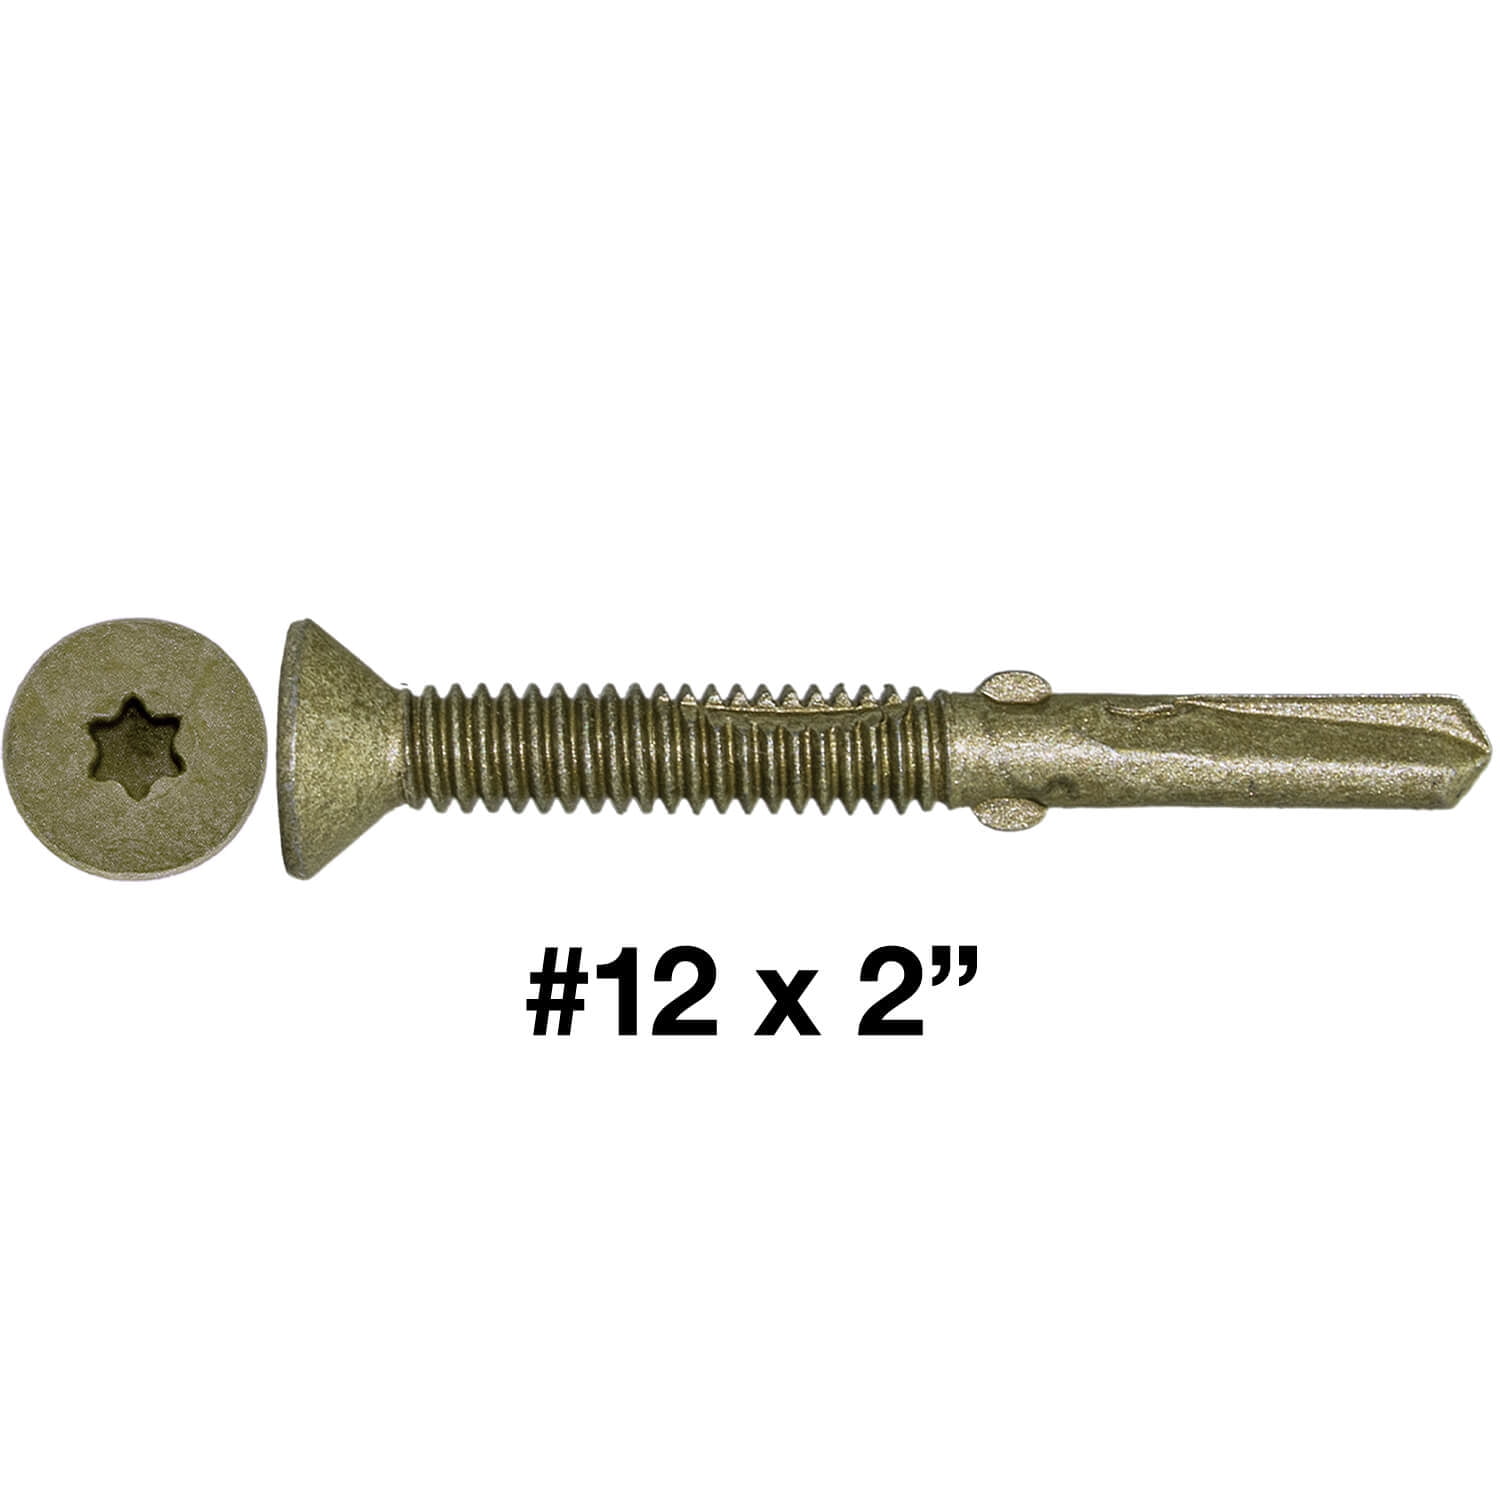 #12 x 2-1/2" Solid Brass Wood Screws Flat Head Phillips Drive Qty 100 